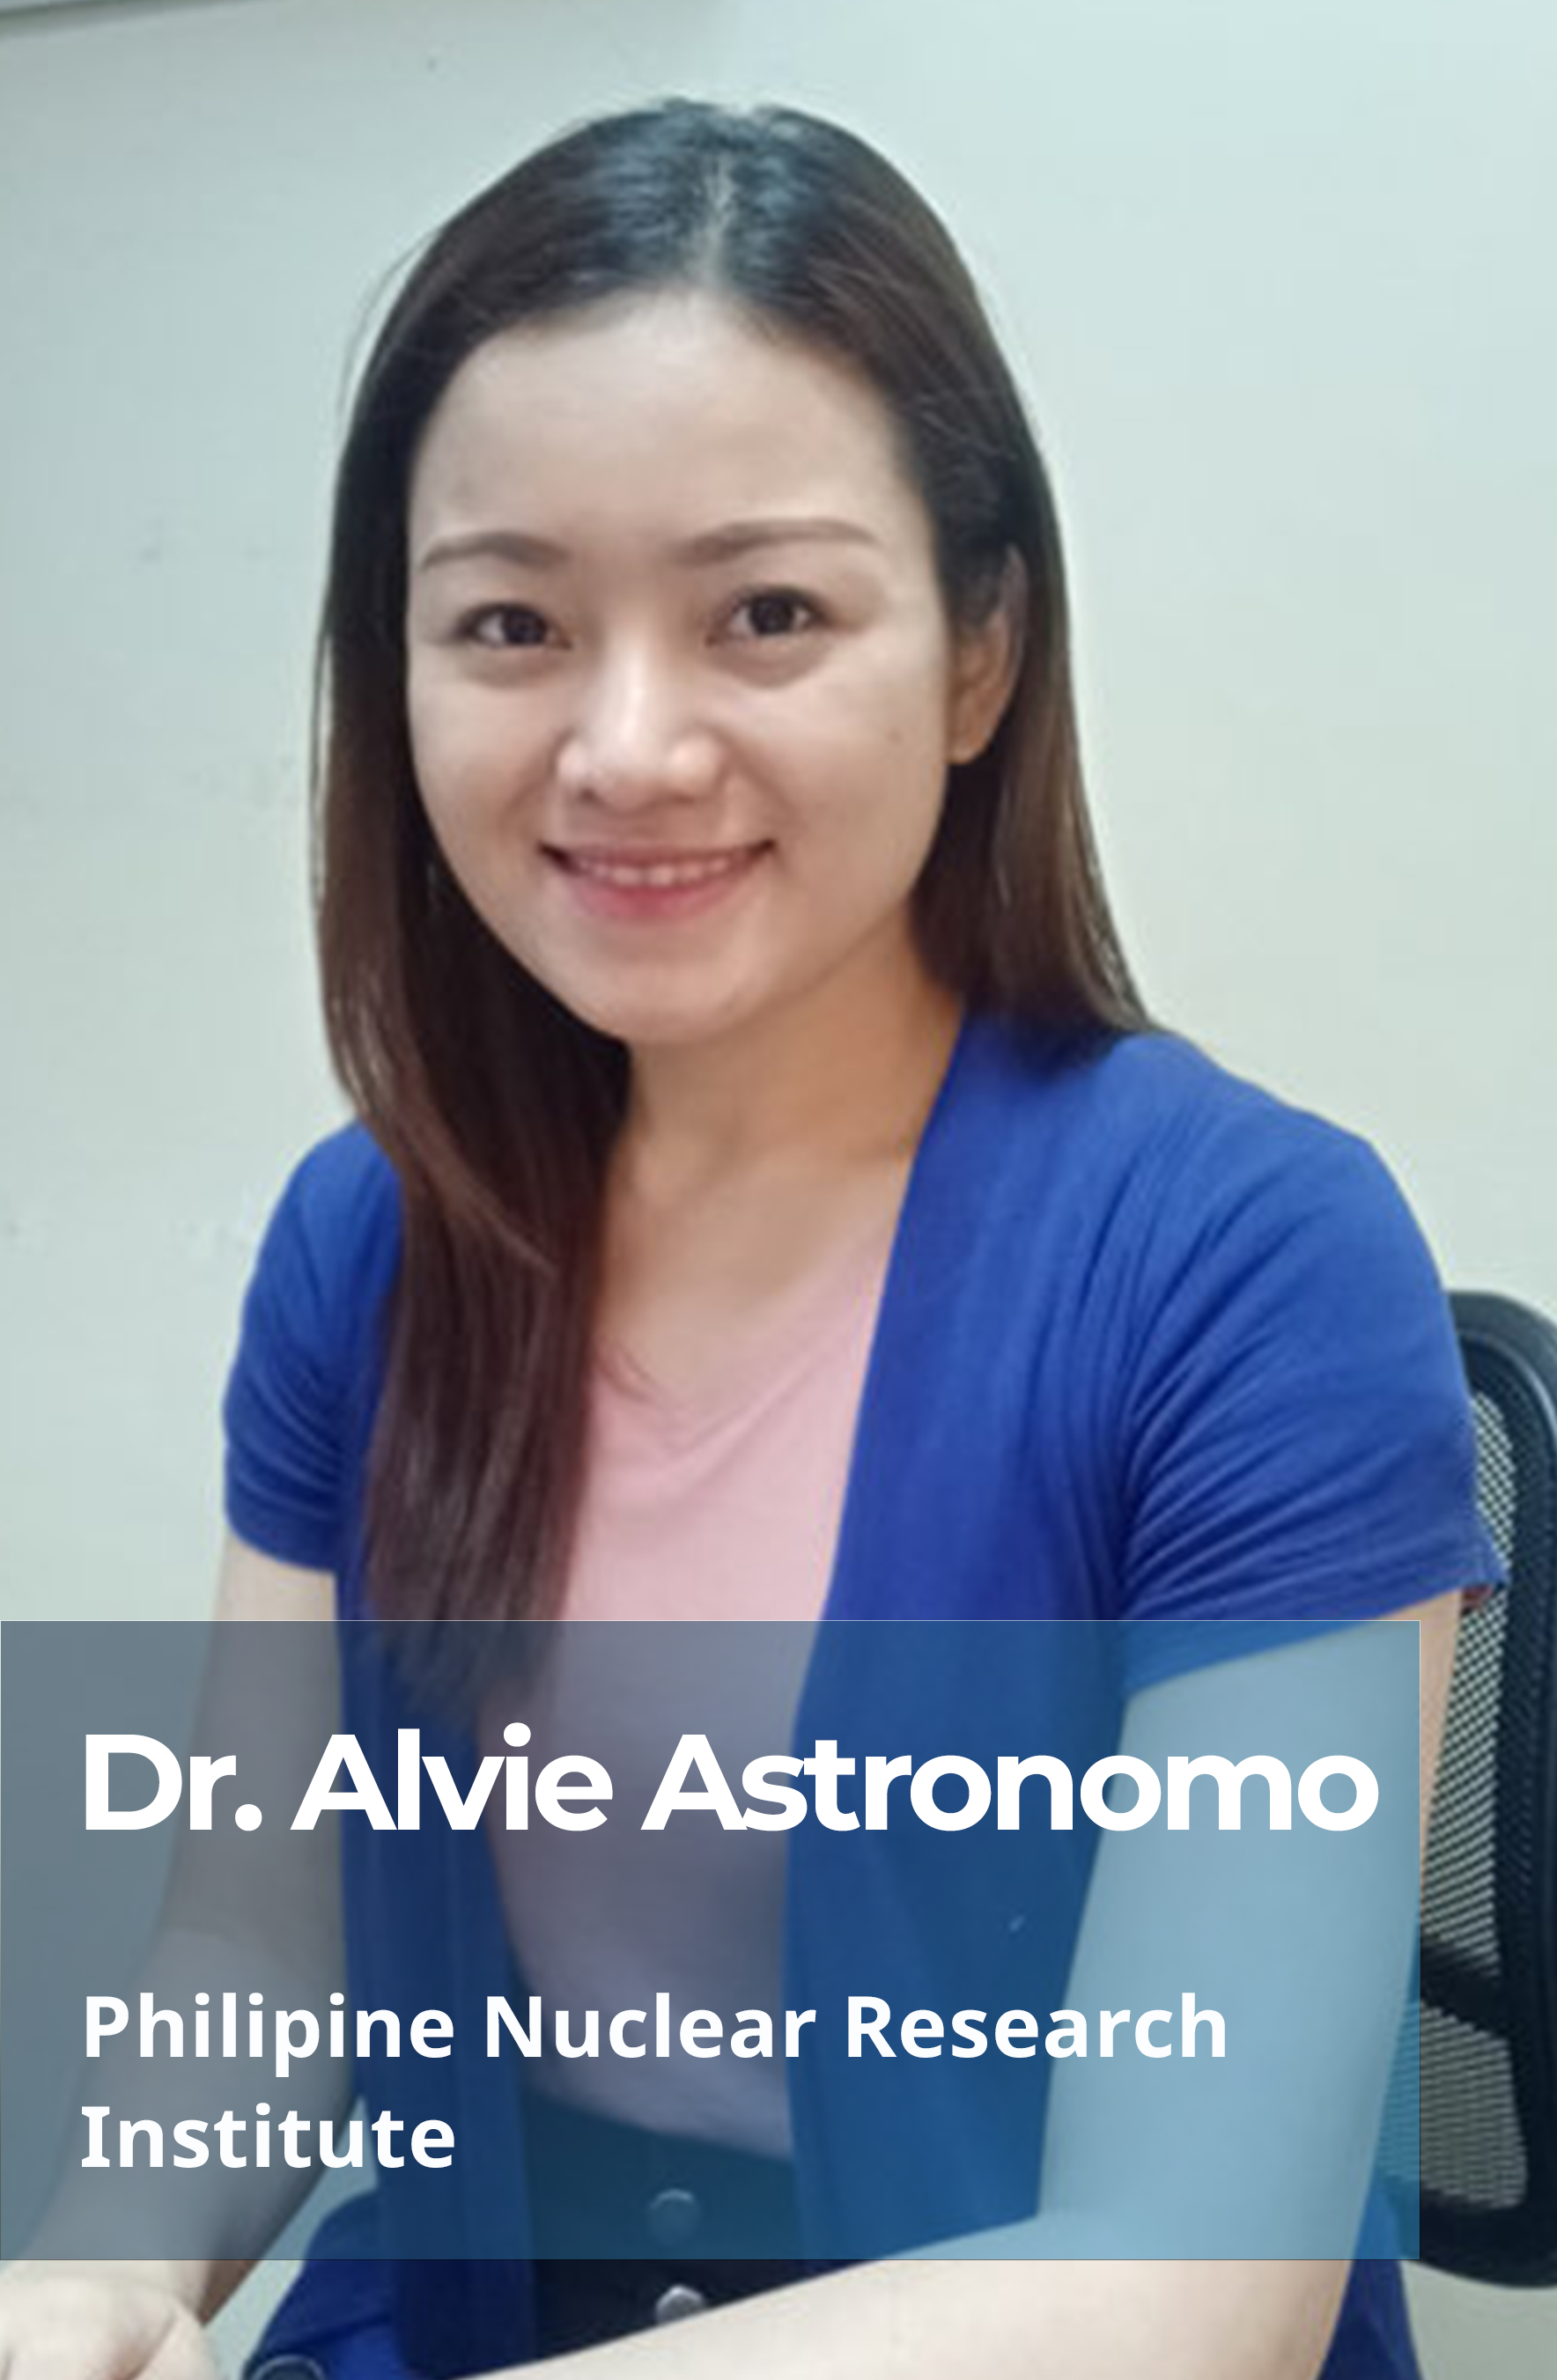 Dr. Alvie Astronomo